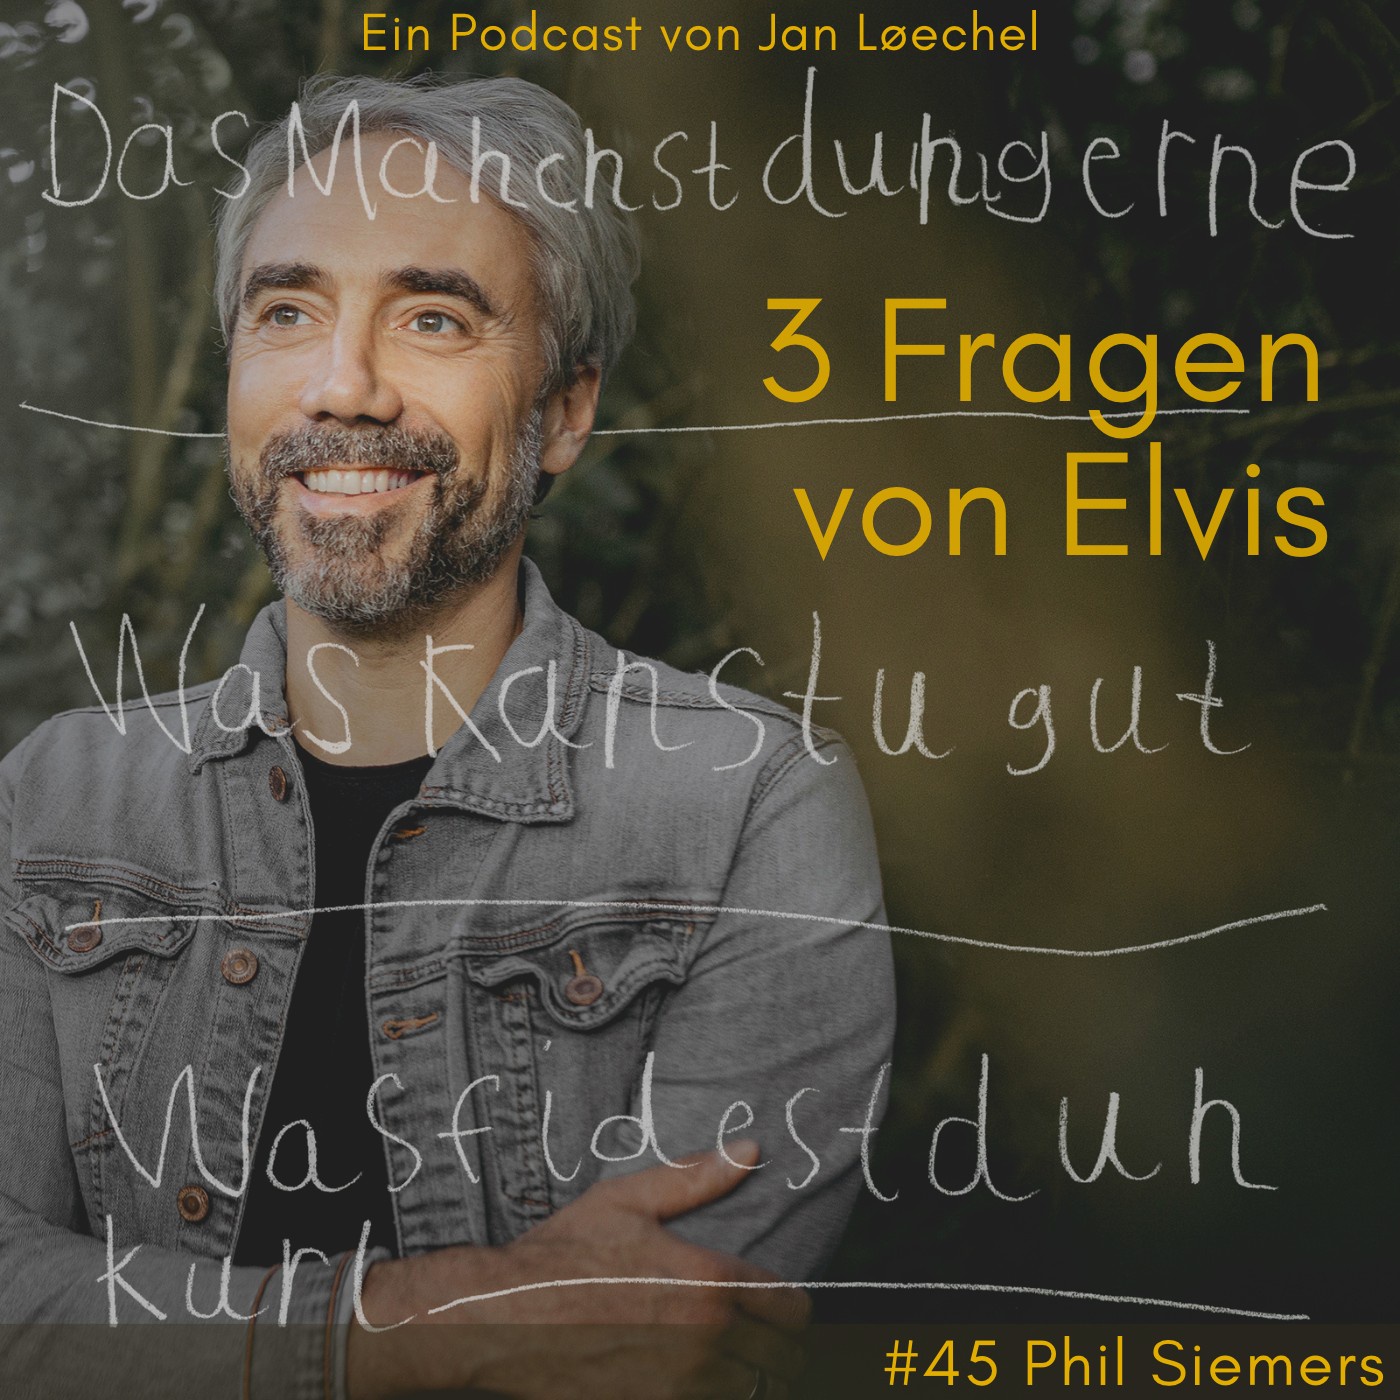 #45 Phil Siemers - Solange du suchst